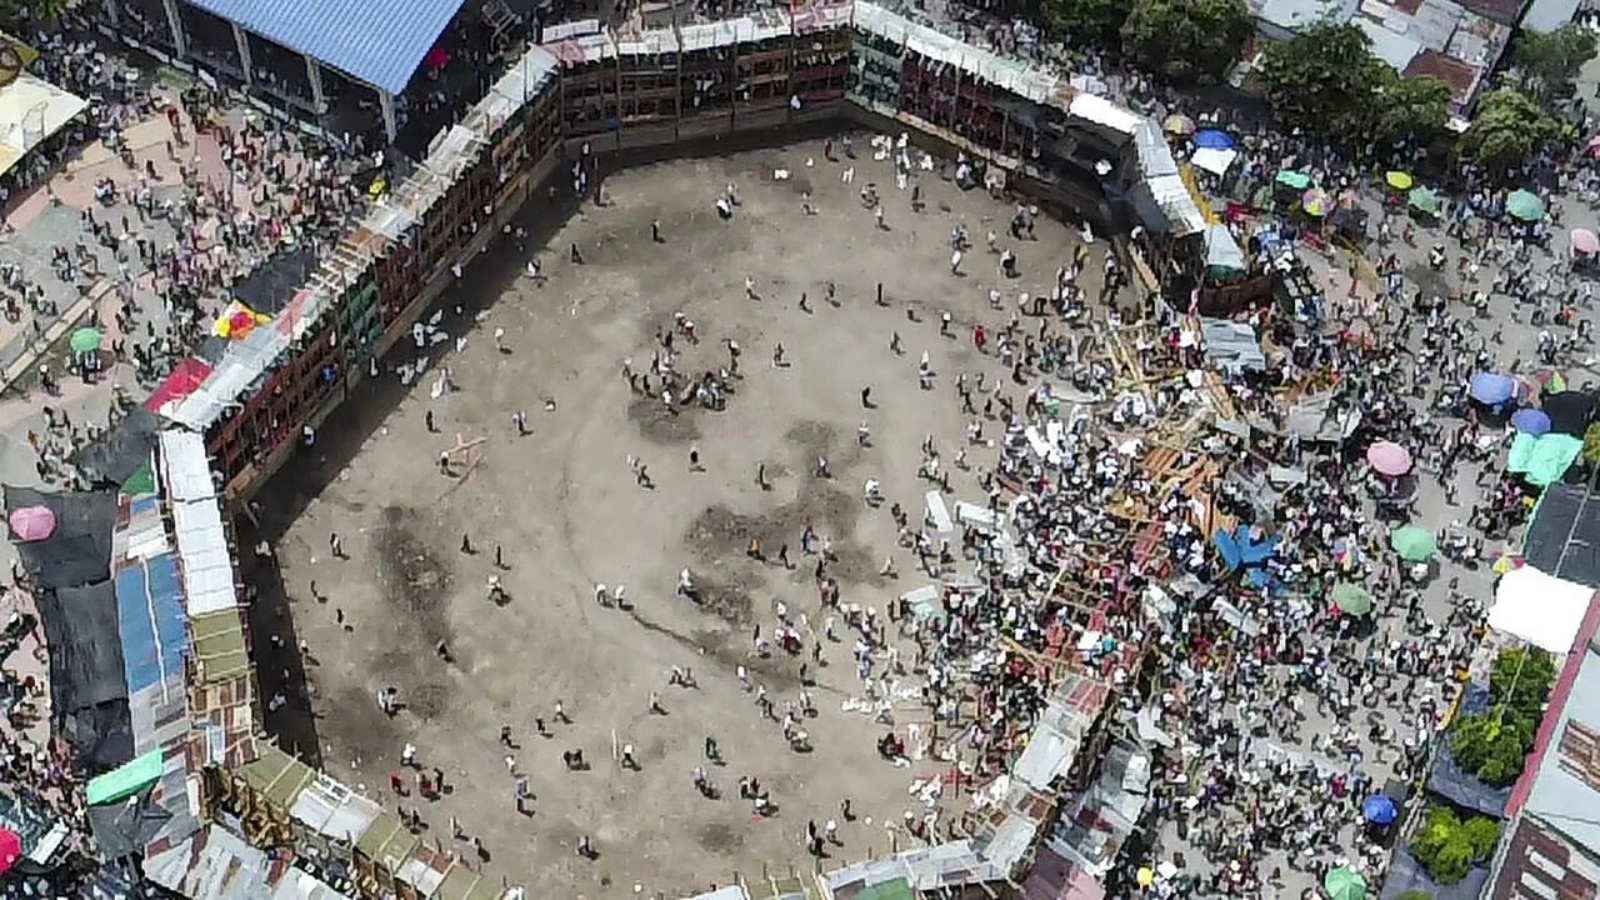 المدرجات المنهارة جزئياً في حلبة مصارعة الثيران في إل إسبينال جنوب غرب بوغوتا في كولومبيا في 26 يونيو 2022 